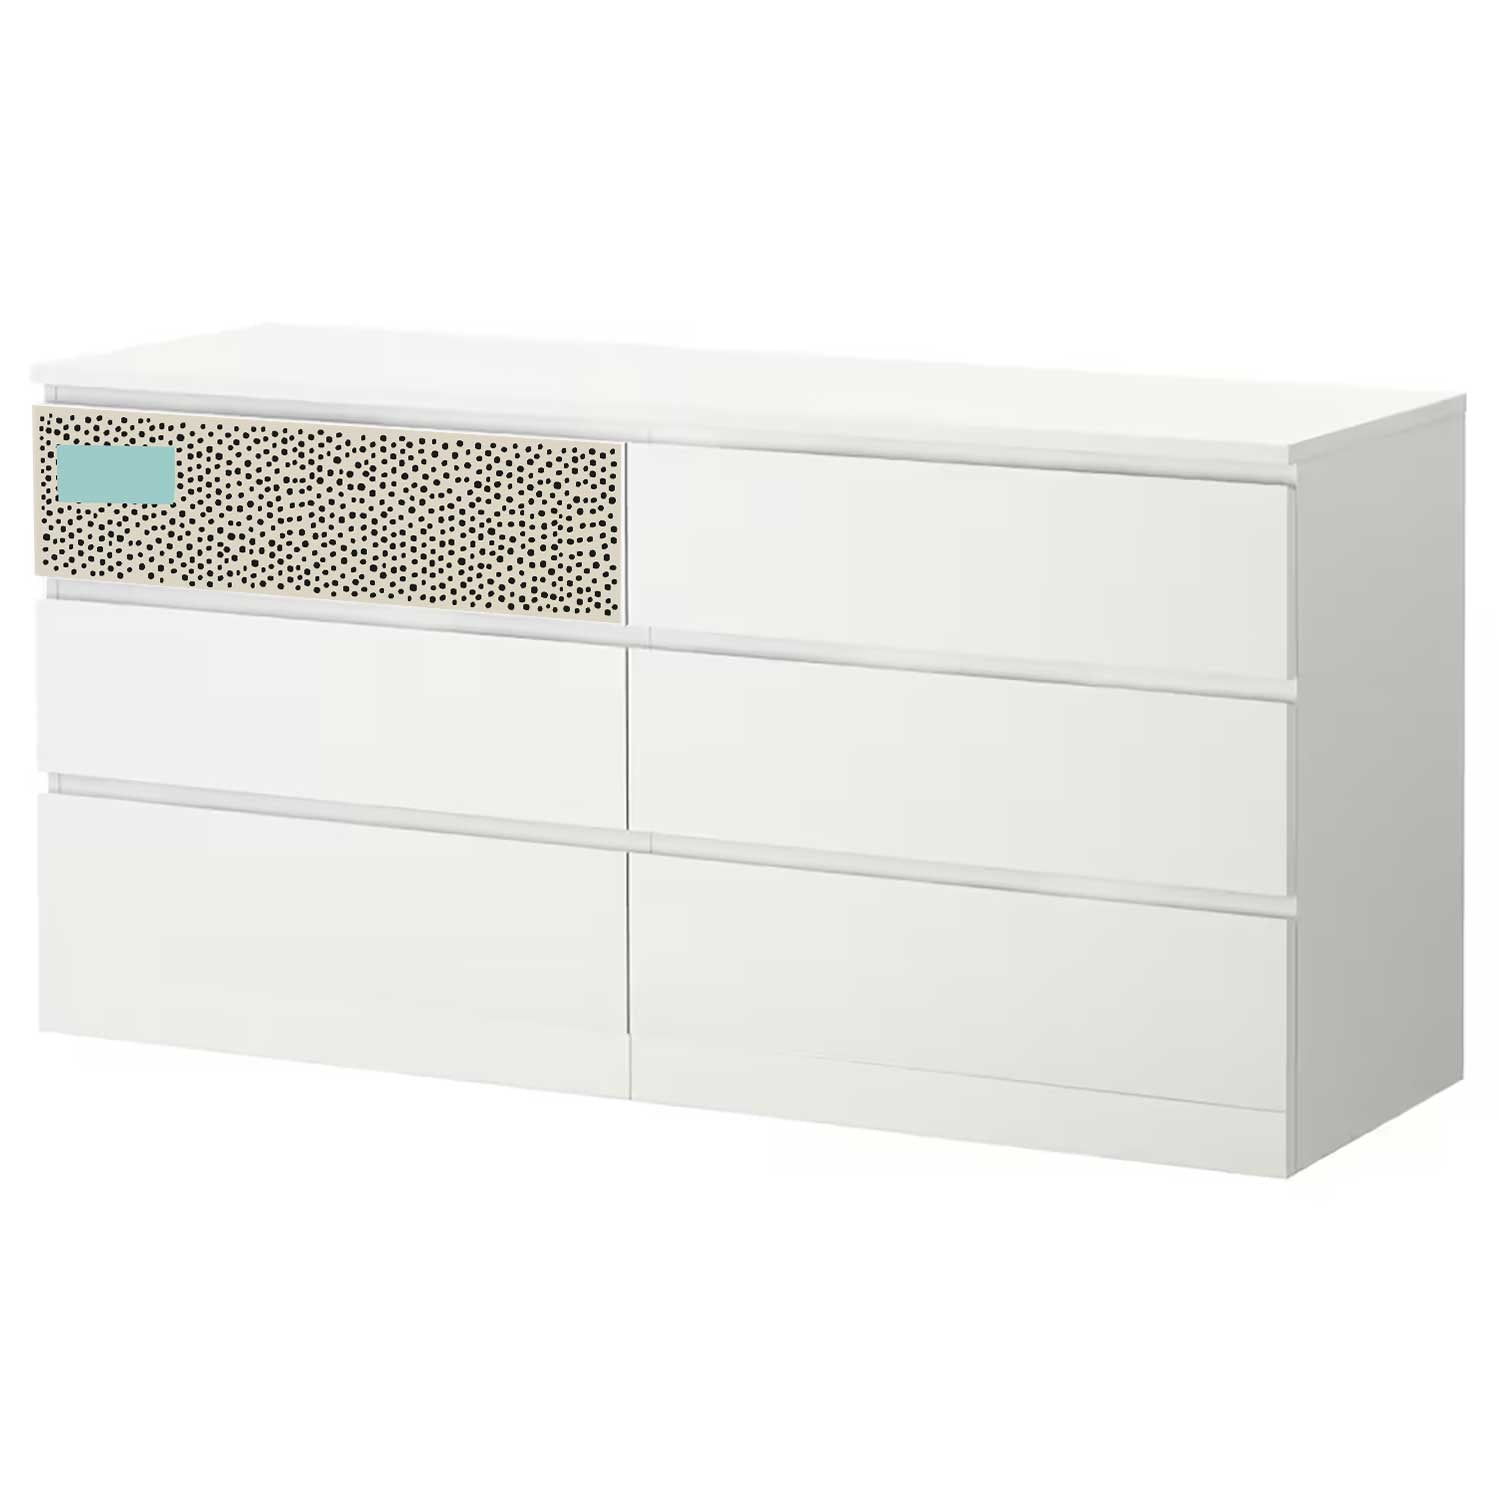 Möbelfolie für IKEA MALM Kommode 6-Schubladen 160x78 cm 'Pünktchen'